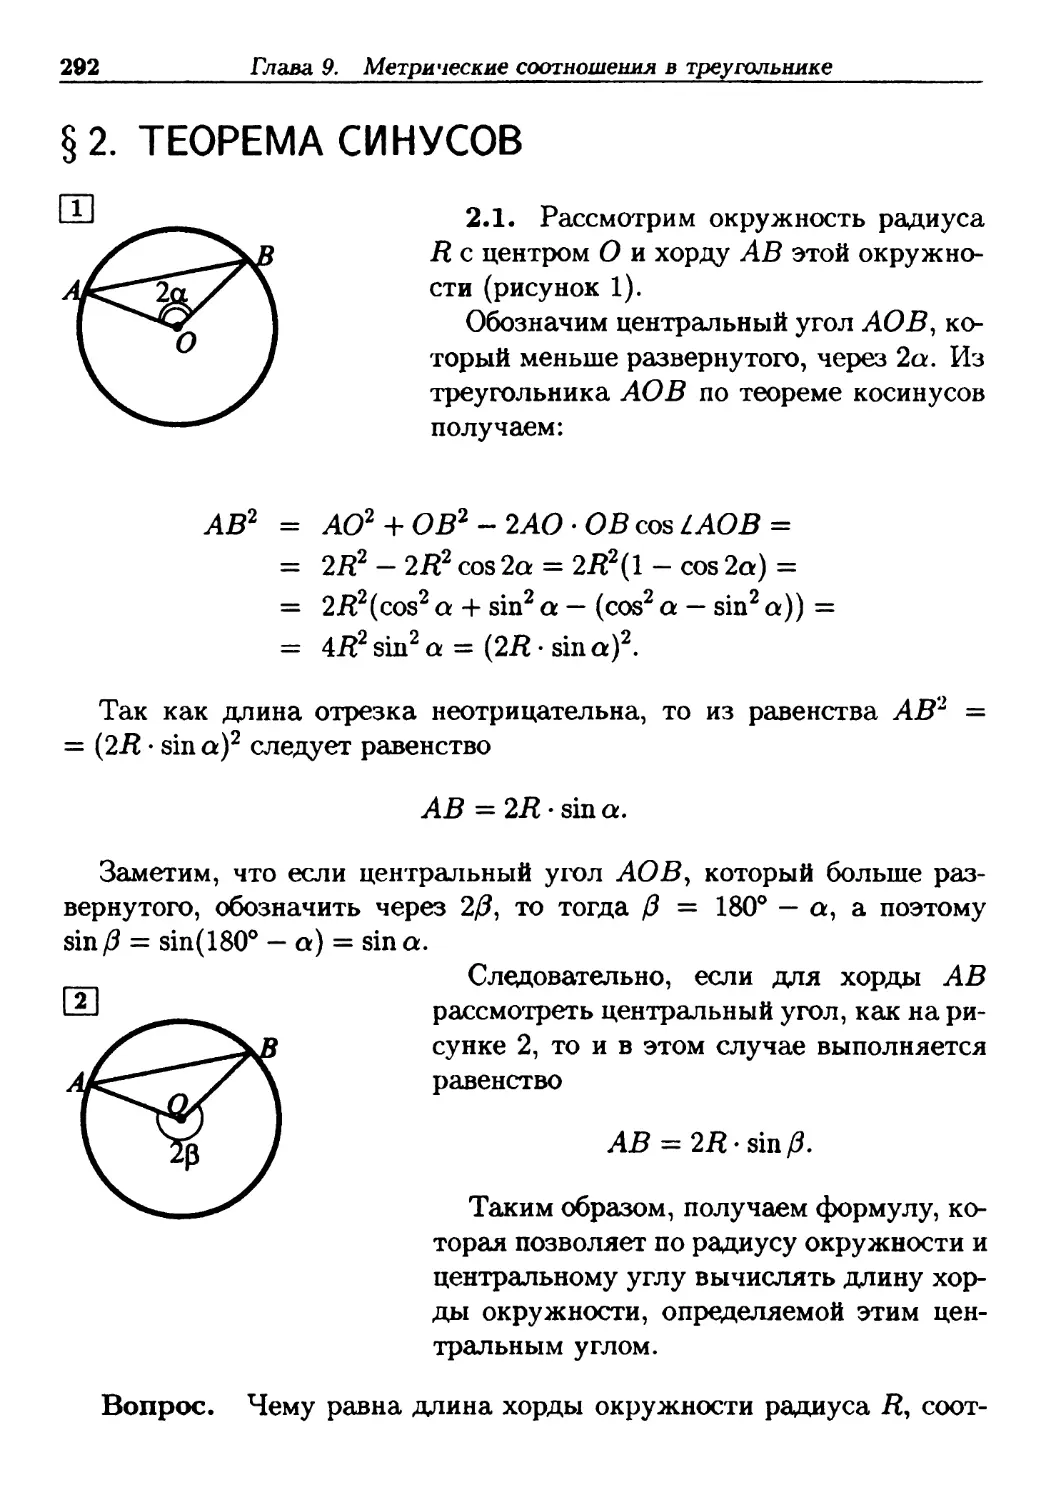 §2. Теорема синусов